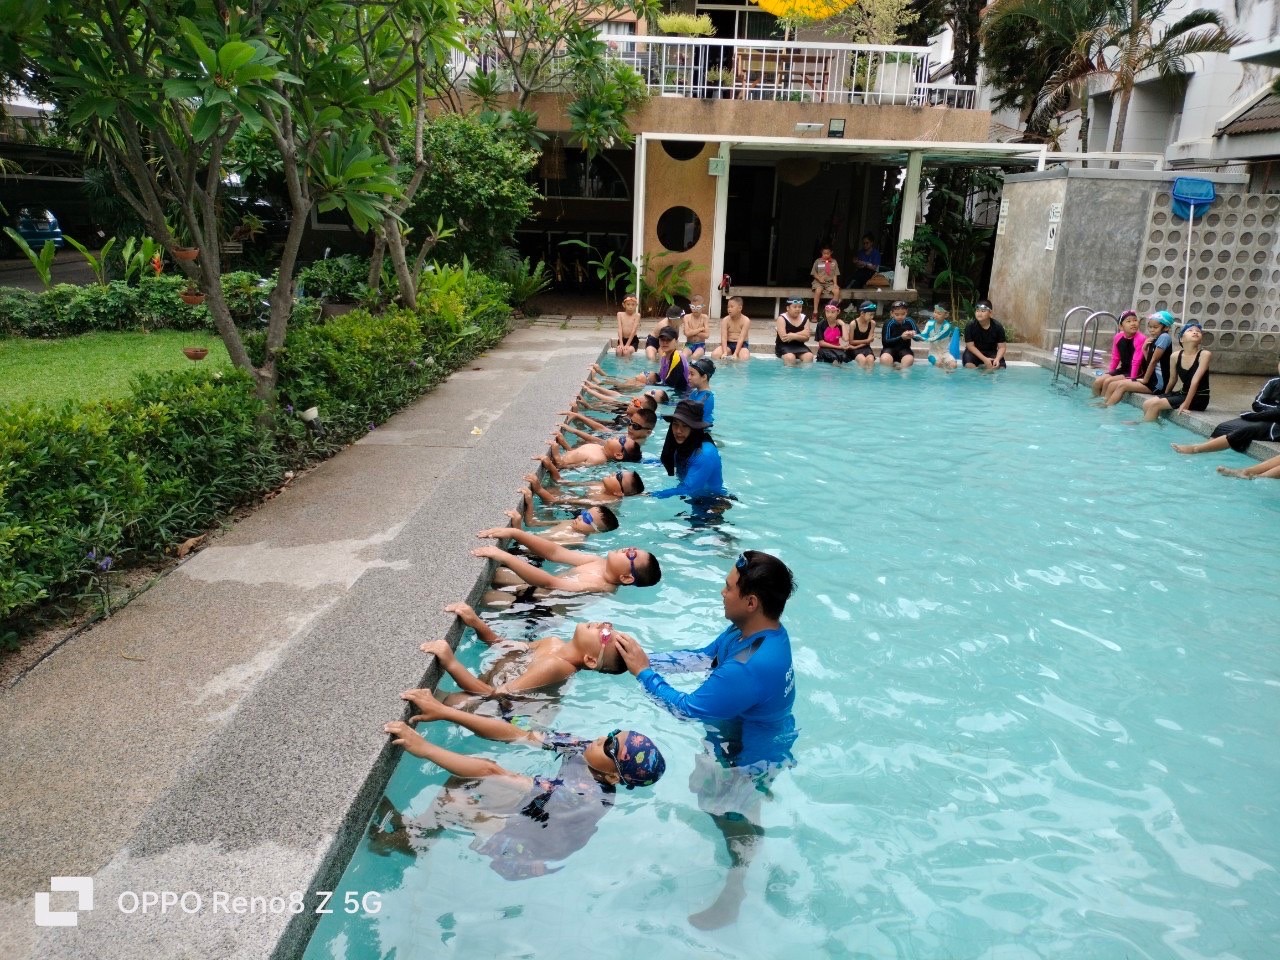 ฉลามบอล ฉลามเซฟ อดีตนักว่ายน้ำเหรียญทองซีเกมส์ทีมชาติไทย ร่วมลงสอนว่ายน้ำวันเปิดงาน เพื่อระดมทุนให้เด็กยากจน 1,000 คน พ้นวิกฤตจมน้ำ